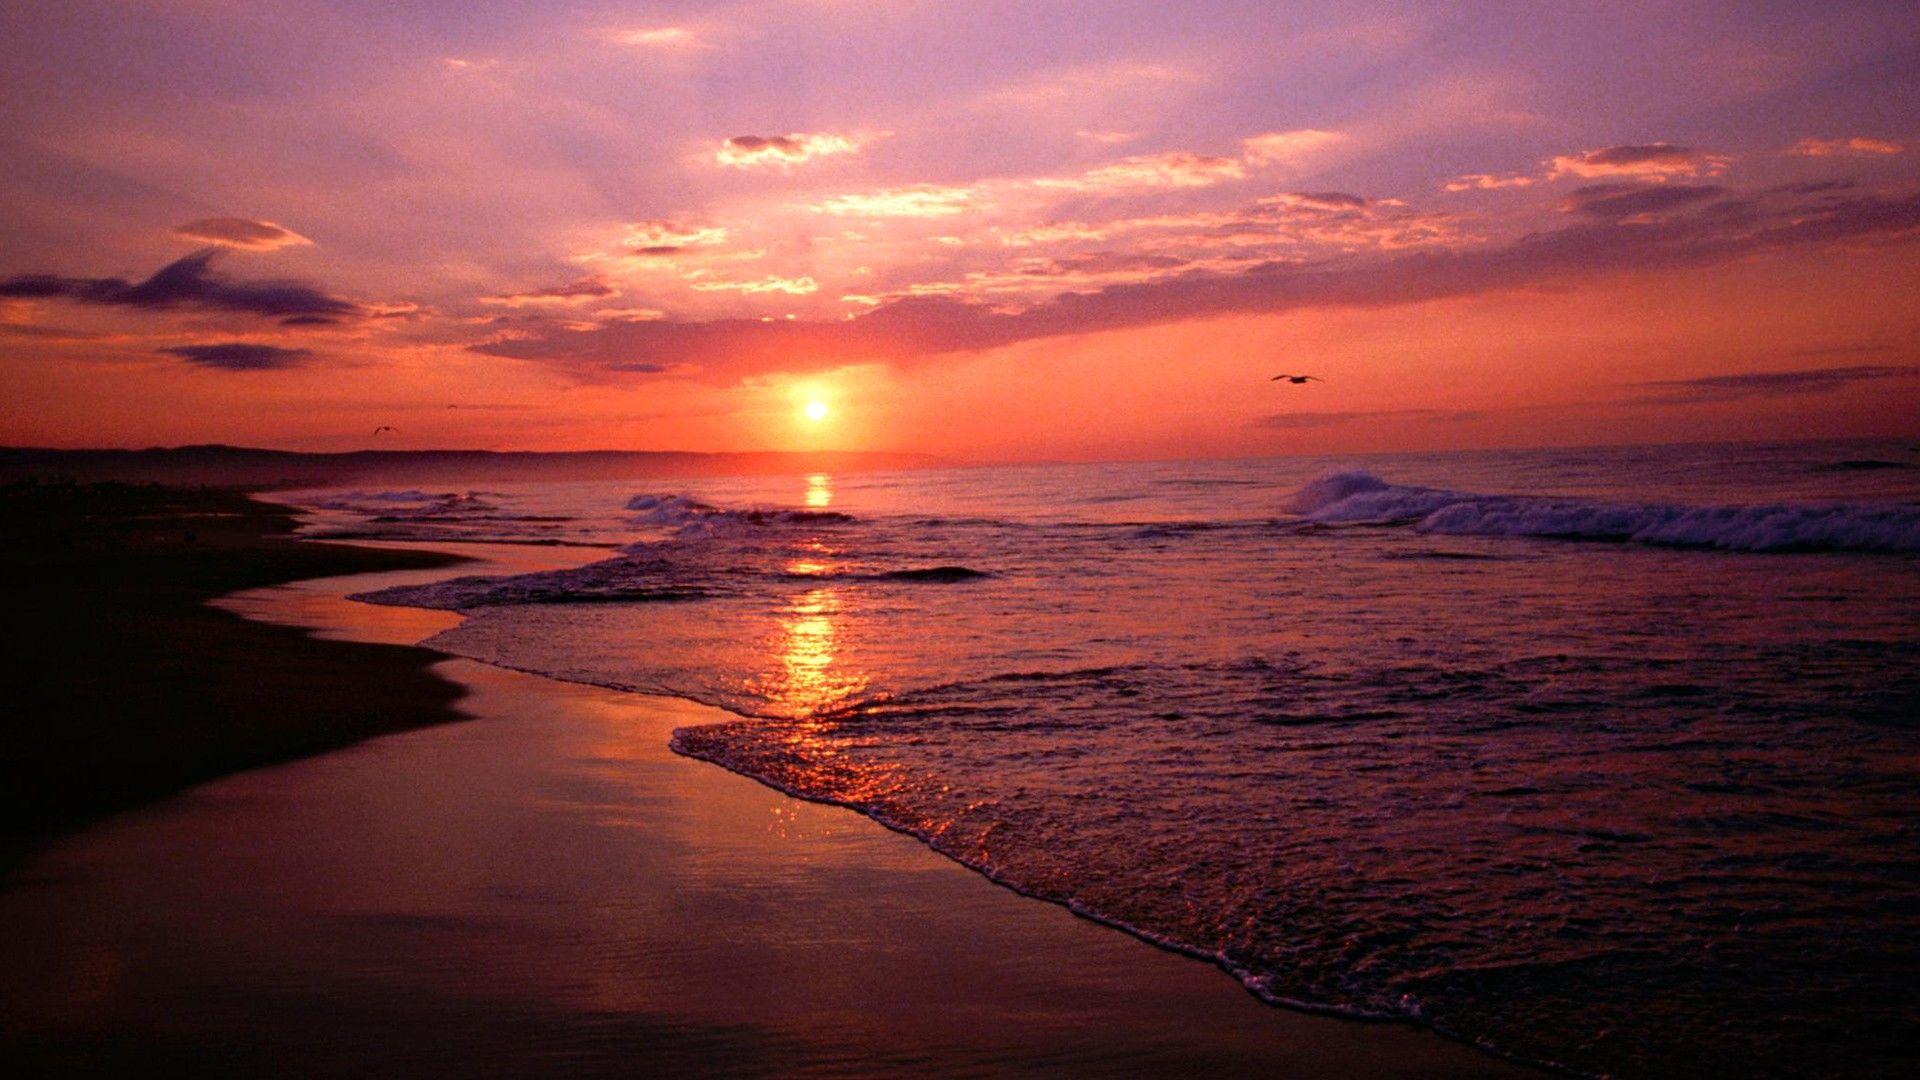 The Beach, sunset beach